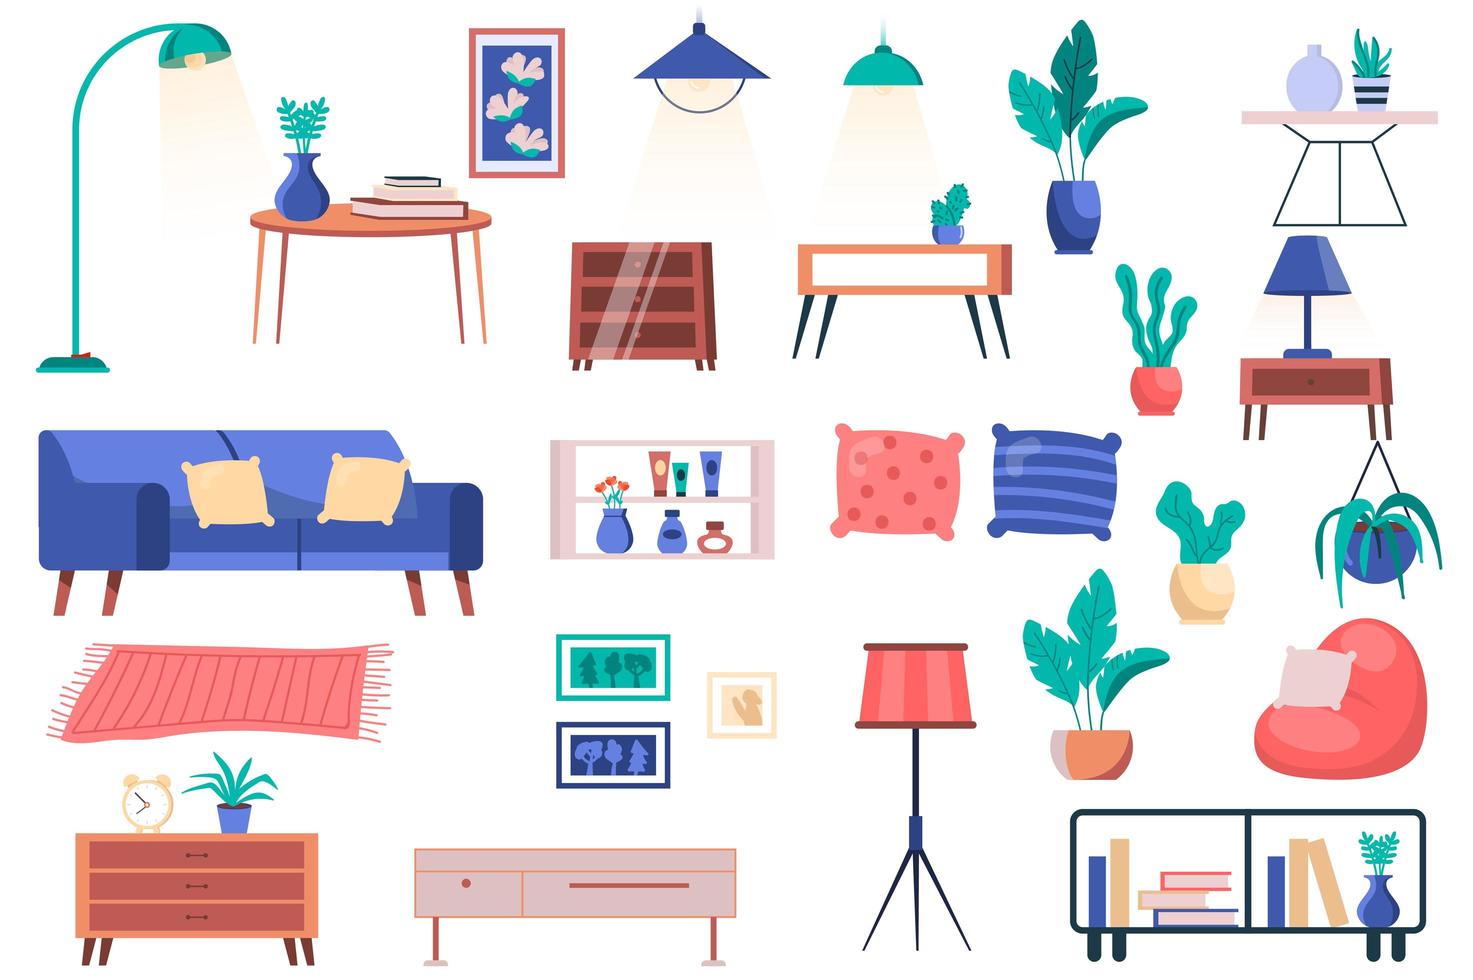 möbler, hus växter och dekor isolerade element set. bunt soffa med kuddar, bord, lampor, kuddar, hyllor, tavlor och annat. skaparkit för vektorillustration i platt tecknad design vektor